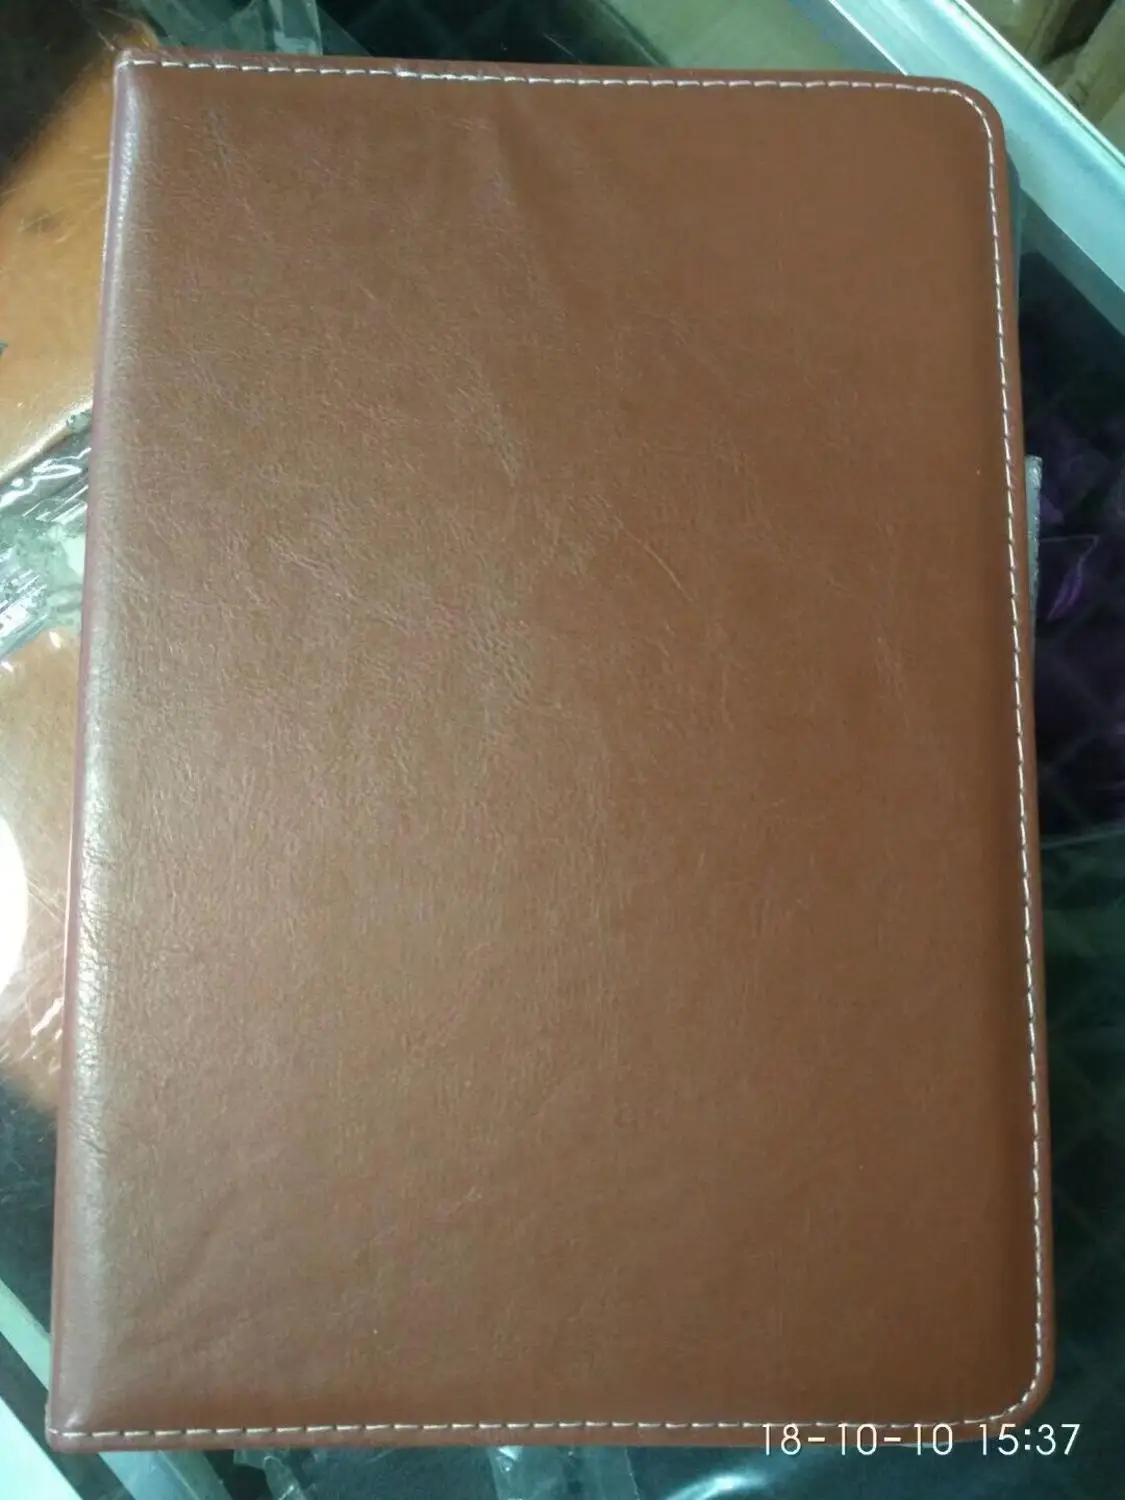 Универсальный чехол с поворотом на 360 градусов для chuwi Hi9 Air Tablet Book Cover для chuwi Hi9 air 10,1 дюймов чехол-подставка+ ручка - Цвет: Коричневый